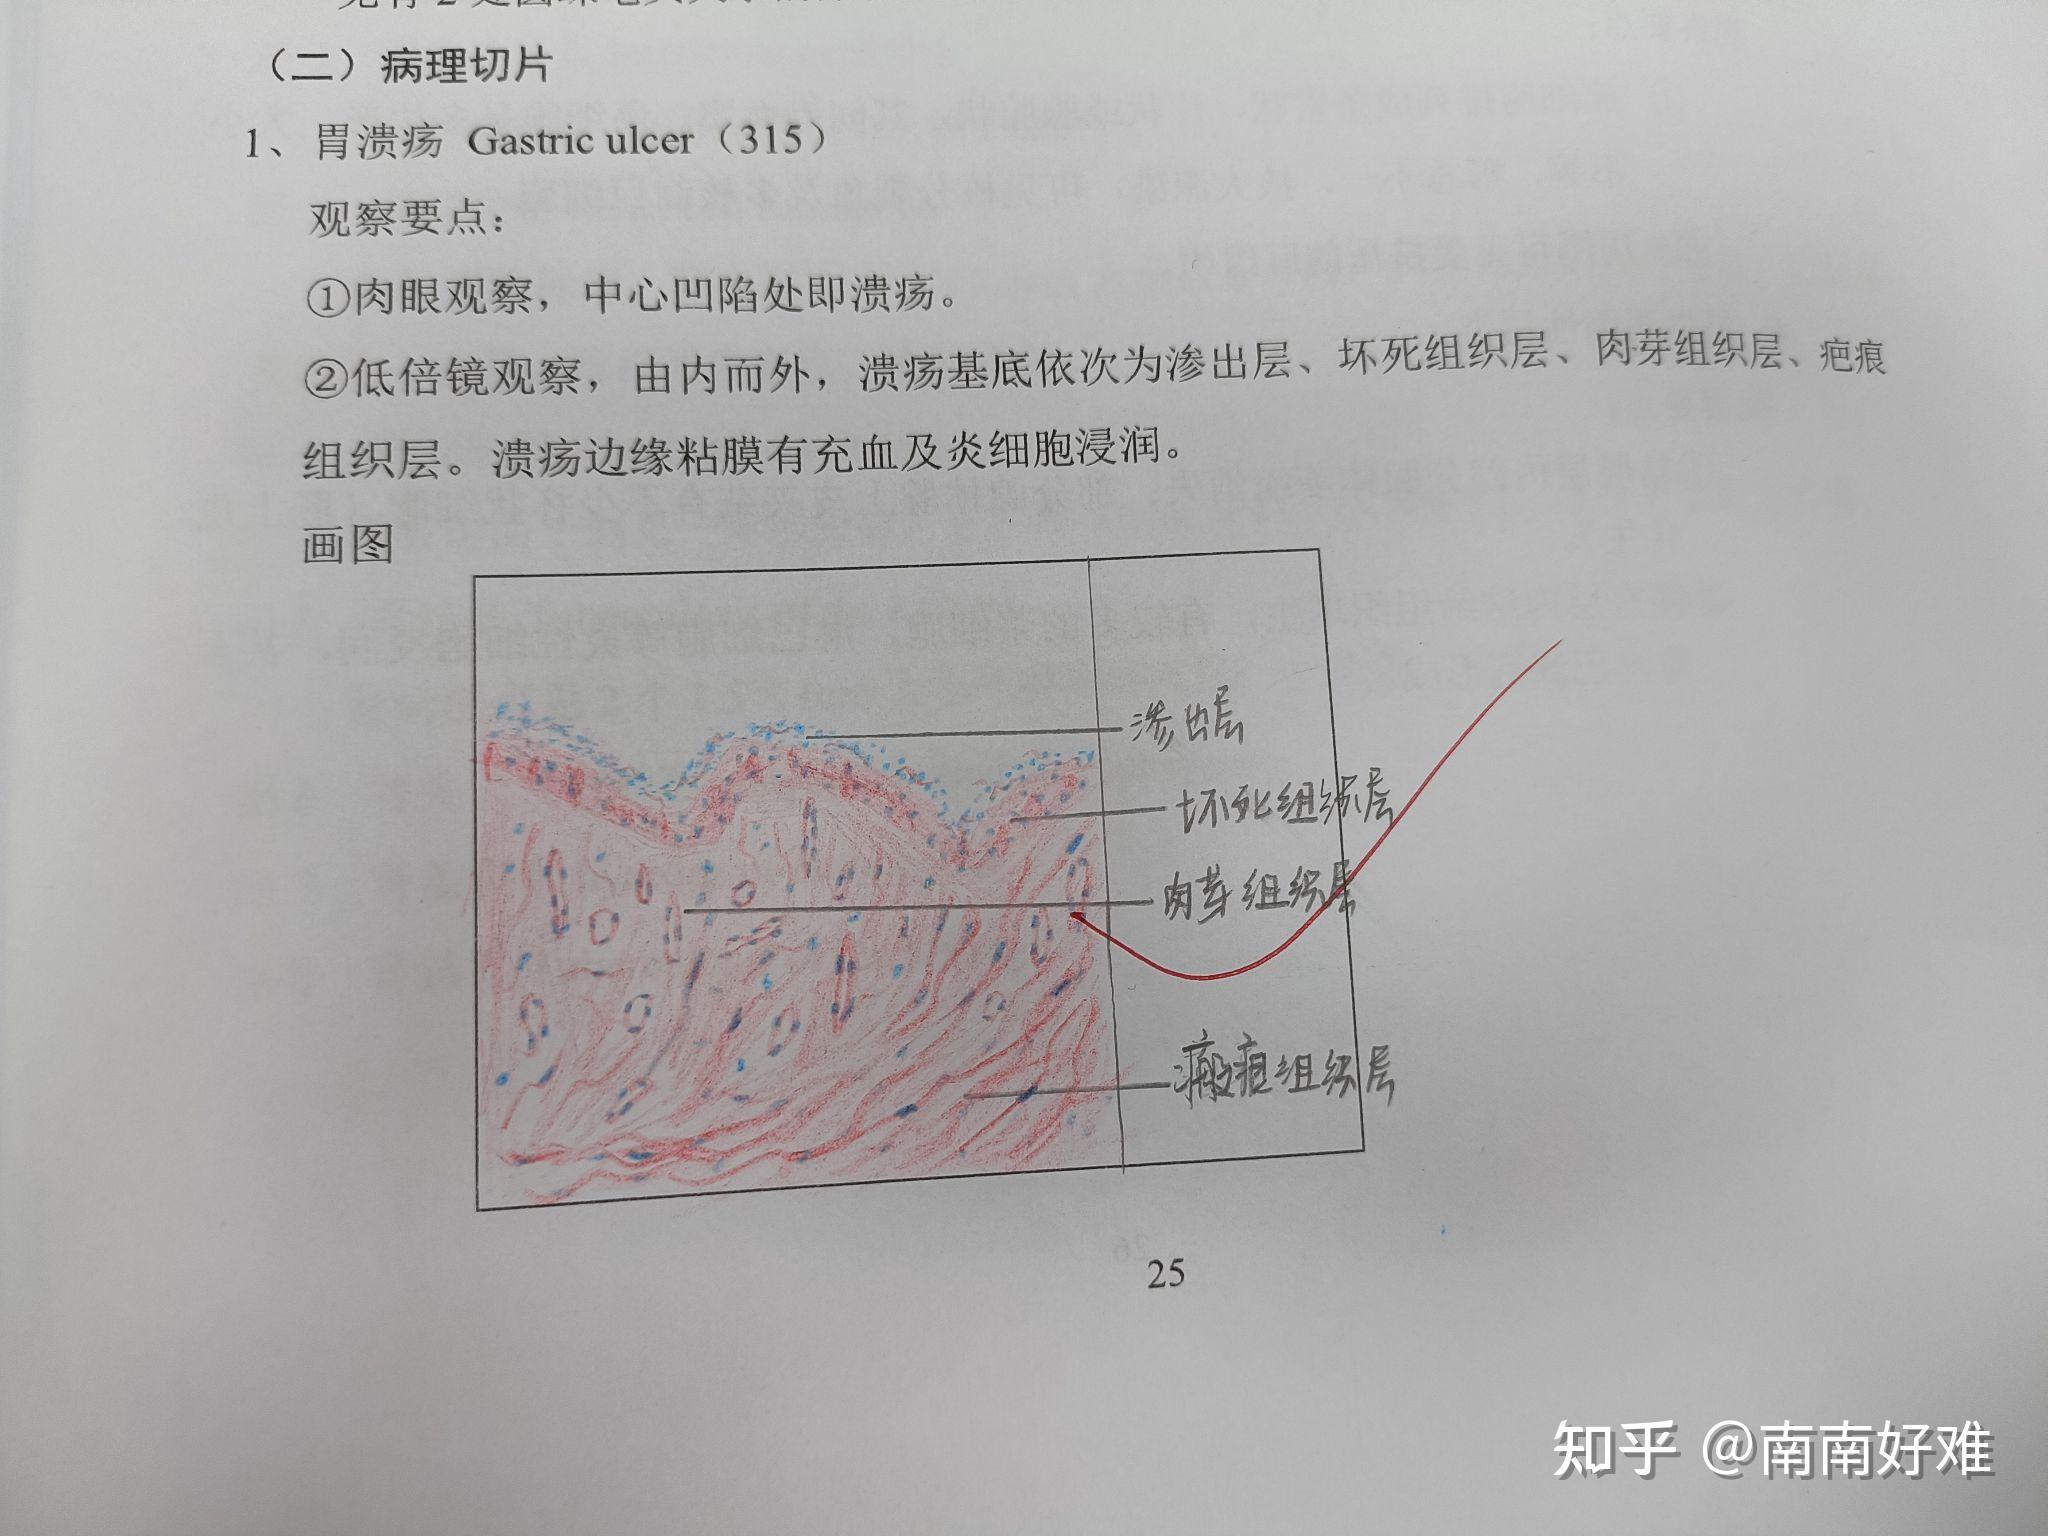 病生实验报告红蓝铅笔图